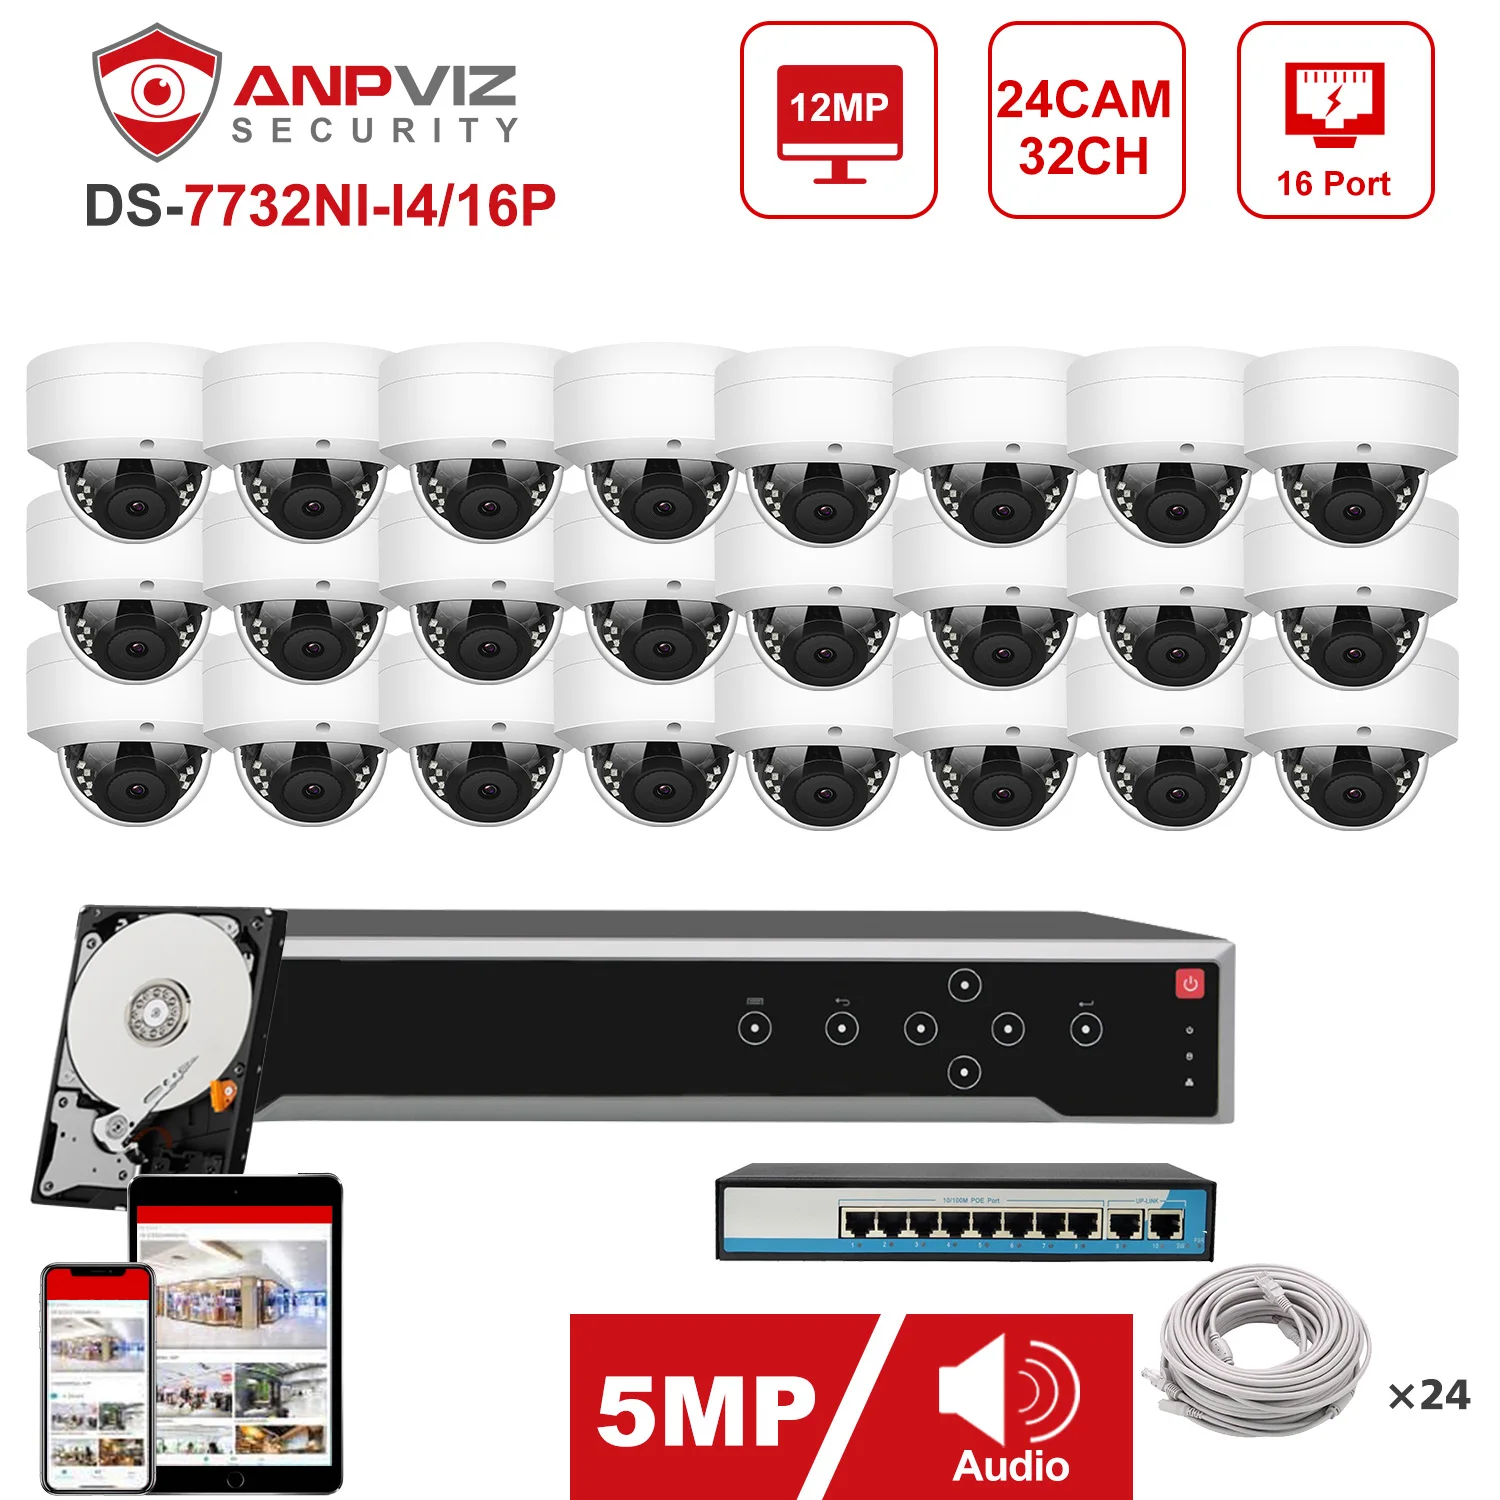 Anpviz NVR 32CH 4K ערכת 24pcs 5MP POE מצלמת IP מערכת פנימית/חיצונית מצלמת IP אבטחה טלוויזיה במעגל סגור מערכת IP66 30m הגנת אבטחה